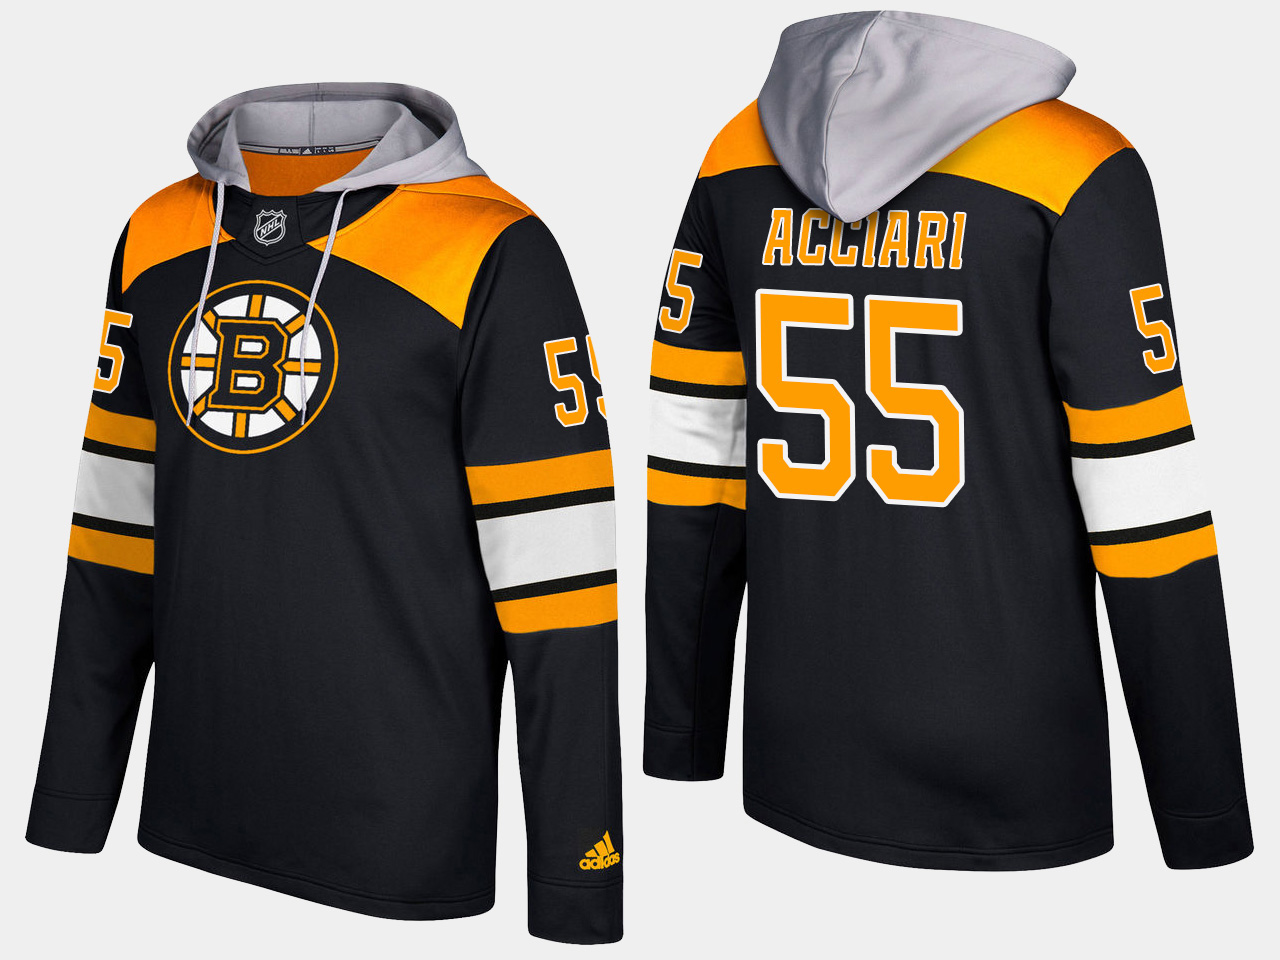 Nike Bruins 55 Noel Acciari Name And Number Black Hoodie - Click Image to Close